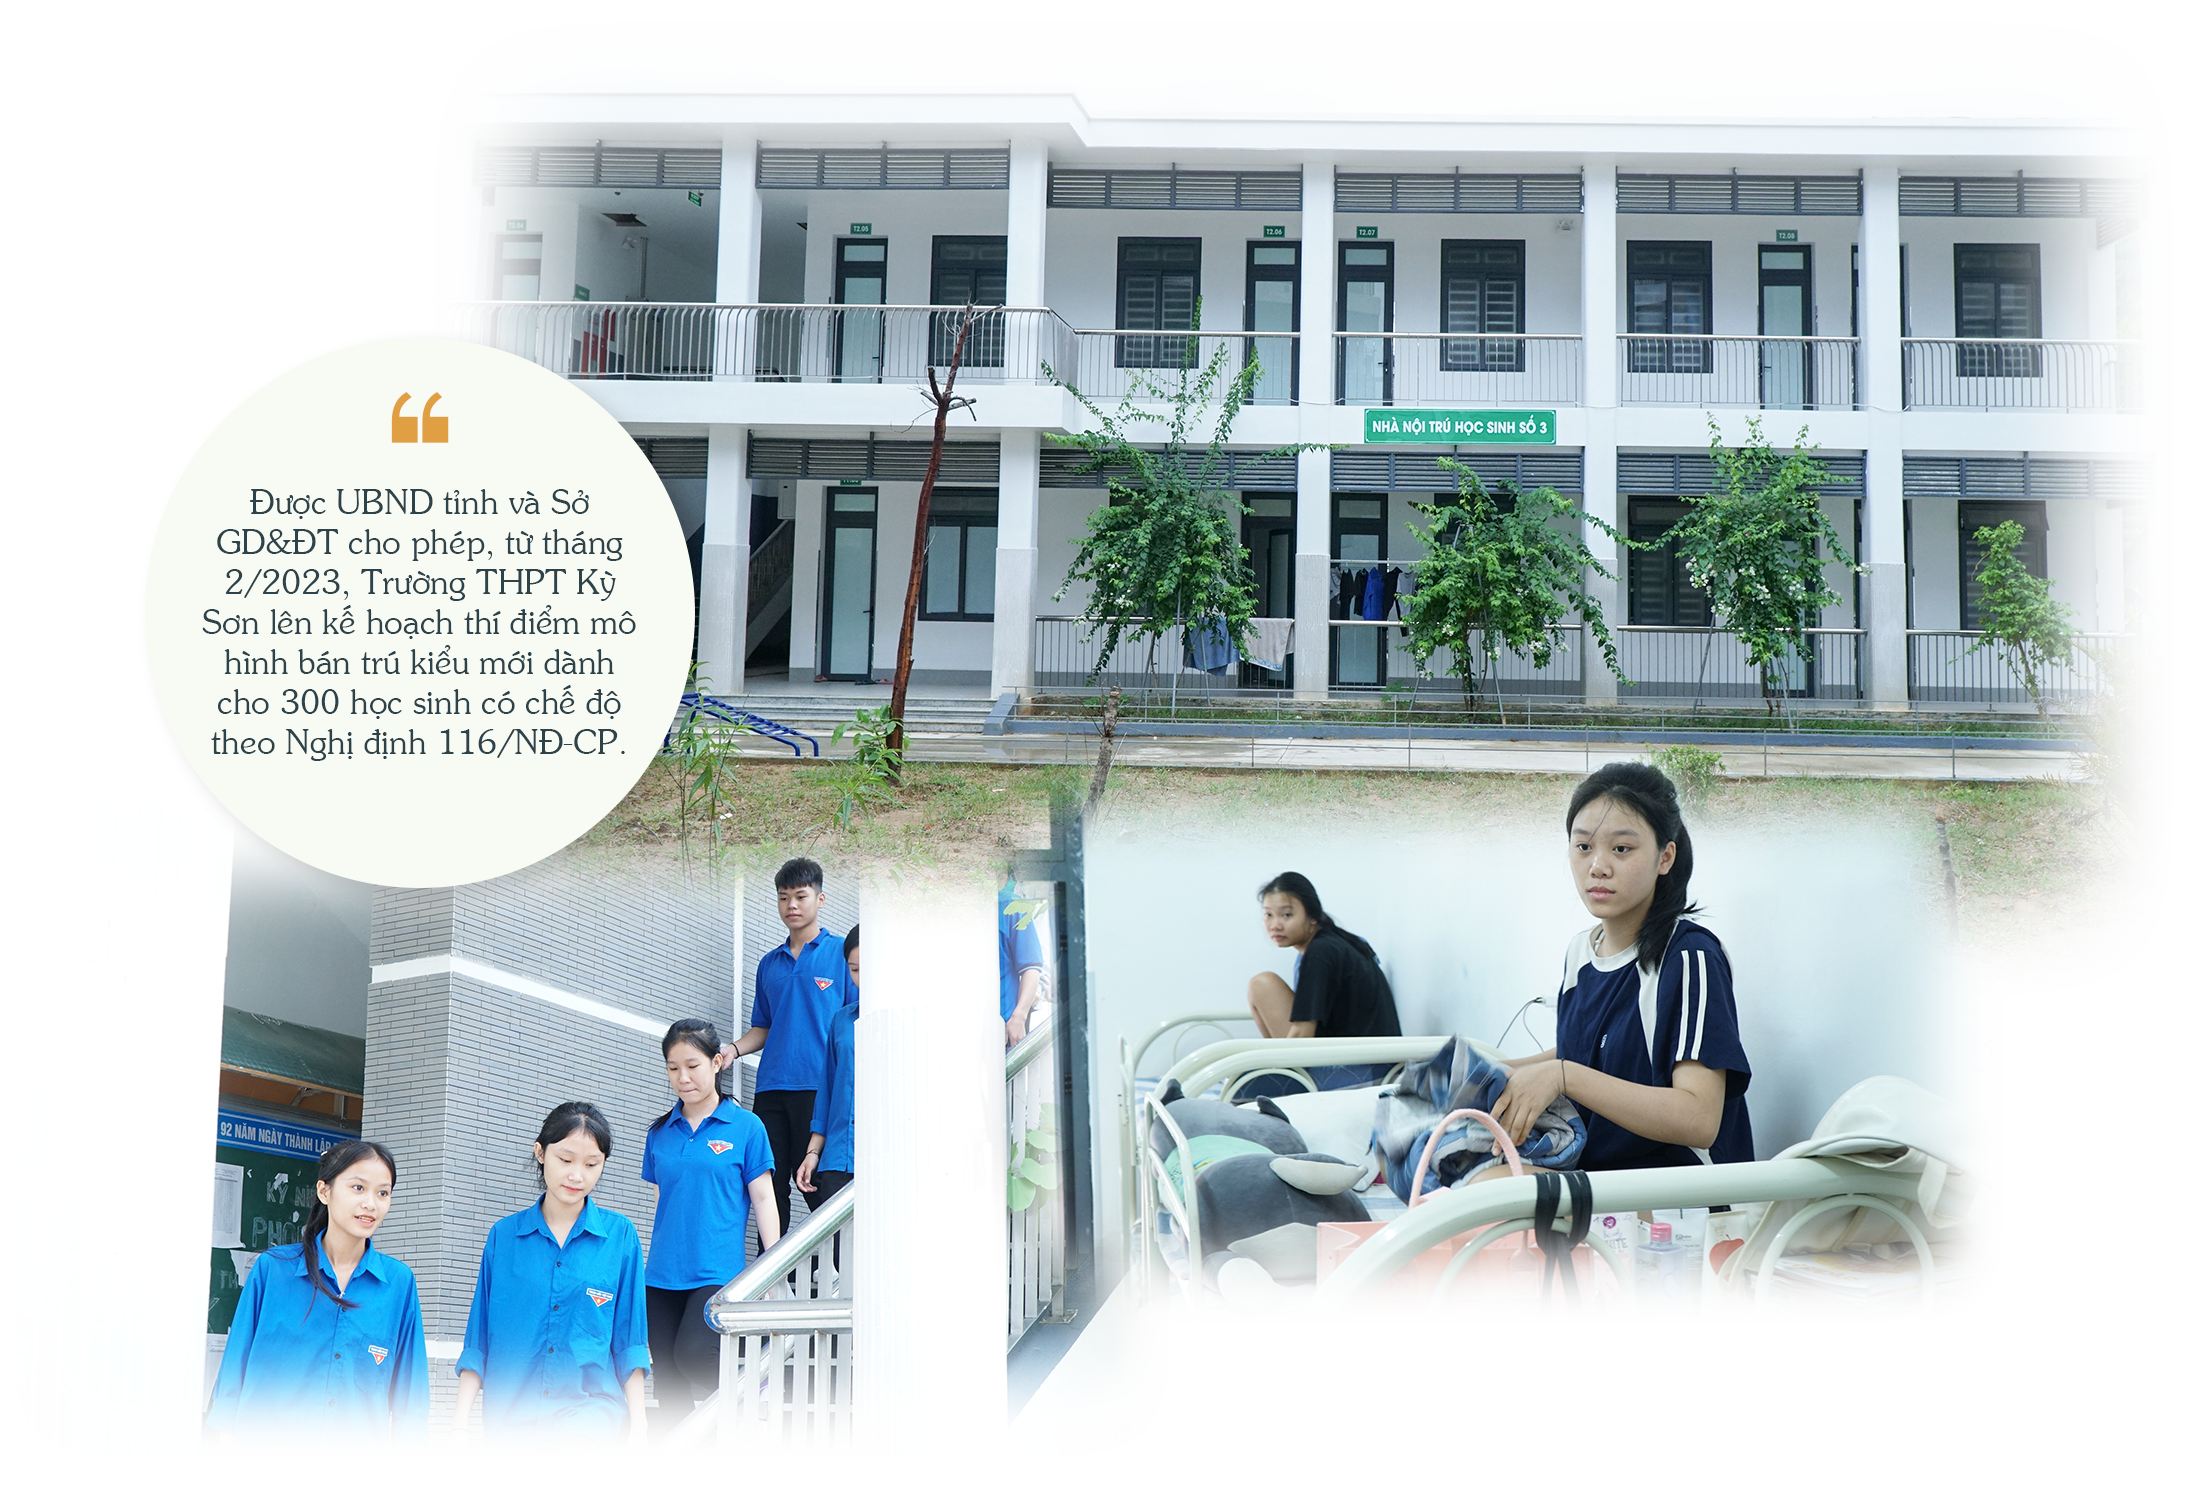 Khu nội trú của Trường THPT Kỳ Sơn; Các em học sinh Trường THPT Kỳ Sơn được ở trong phòng rộng rãi, sạch sẽ.